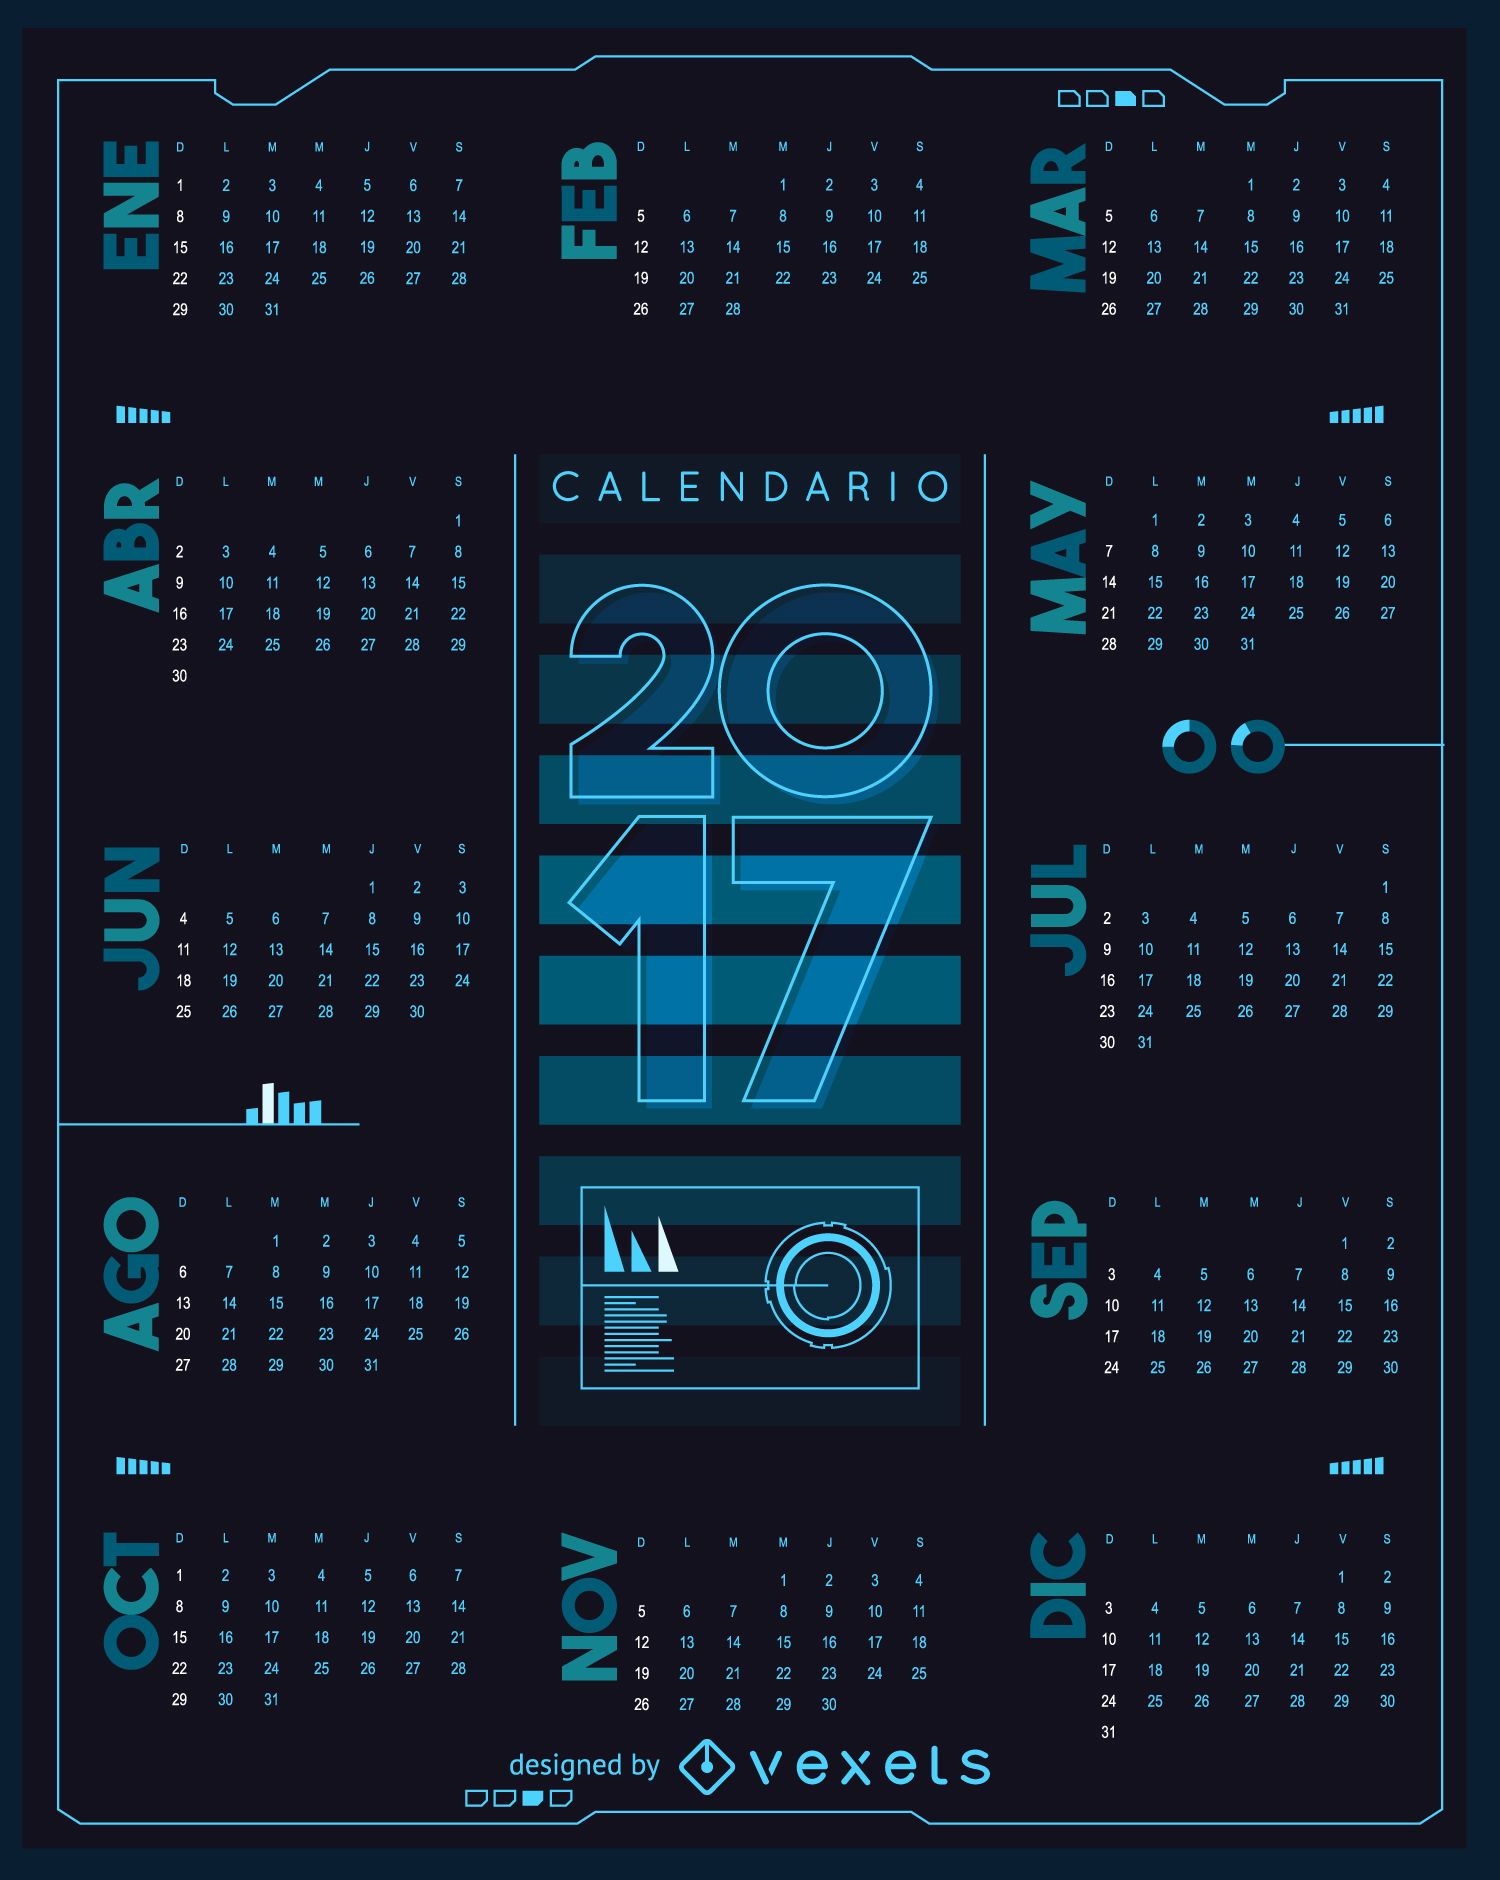 Calendario futurista 2017 en español